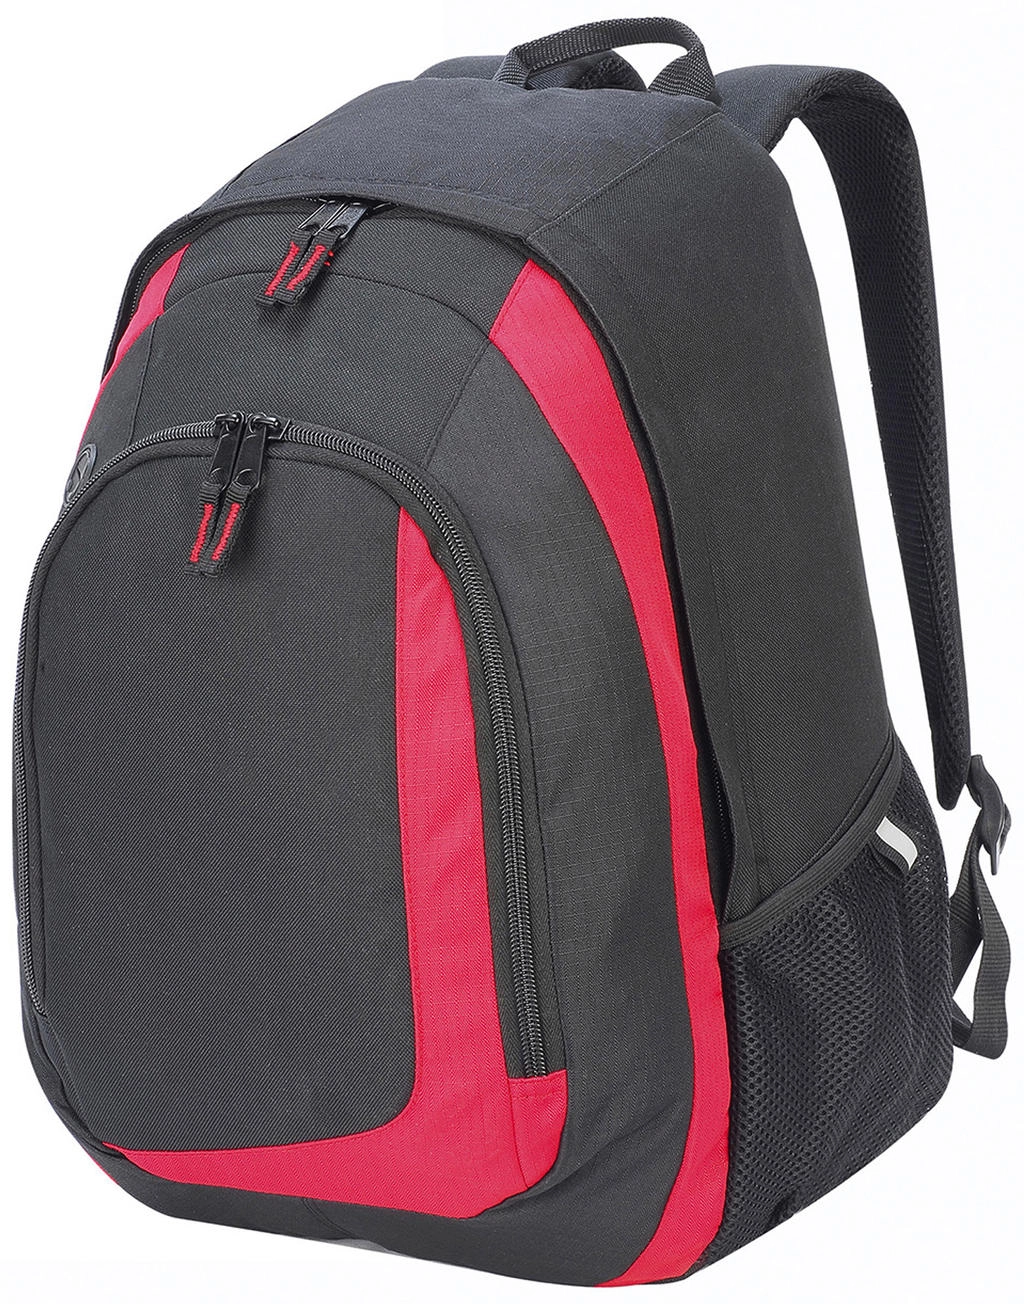 Geneva Backpack zum Besticken und Bedrucken mit Ihren Logo, Schriftzug oder Motiv.